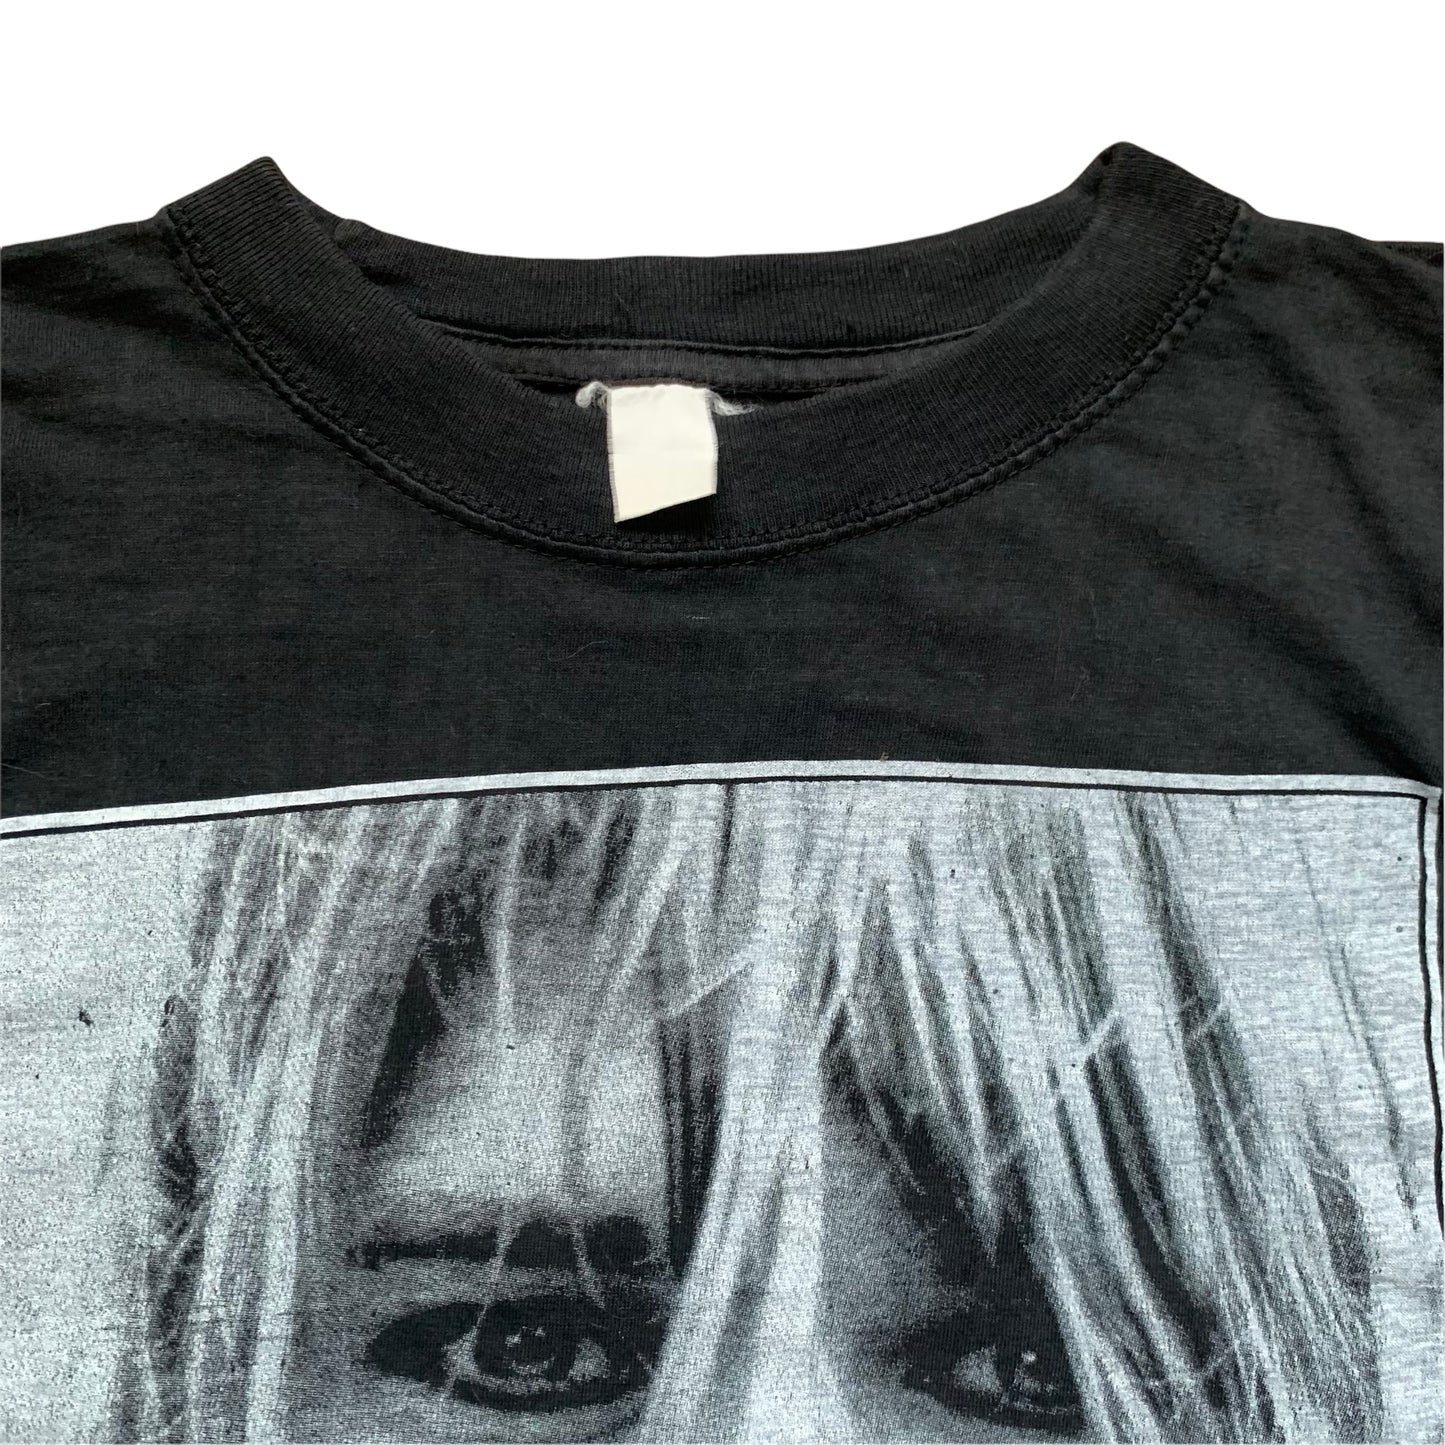 90s Kurt Cobain 'Memorial' (L)